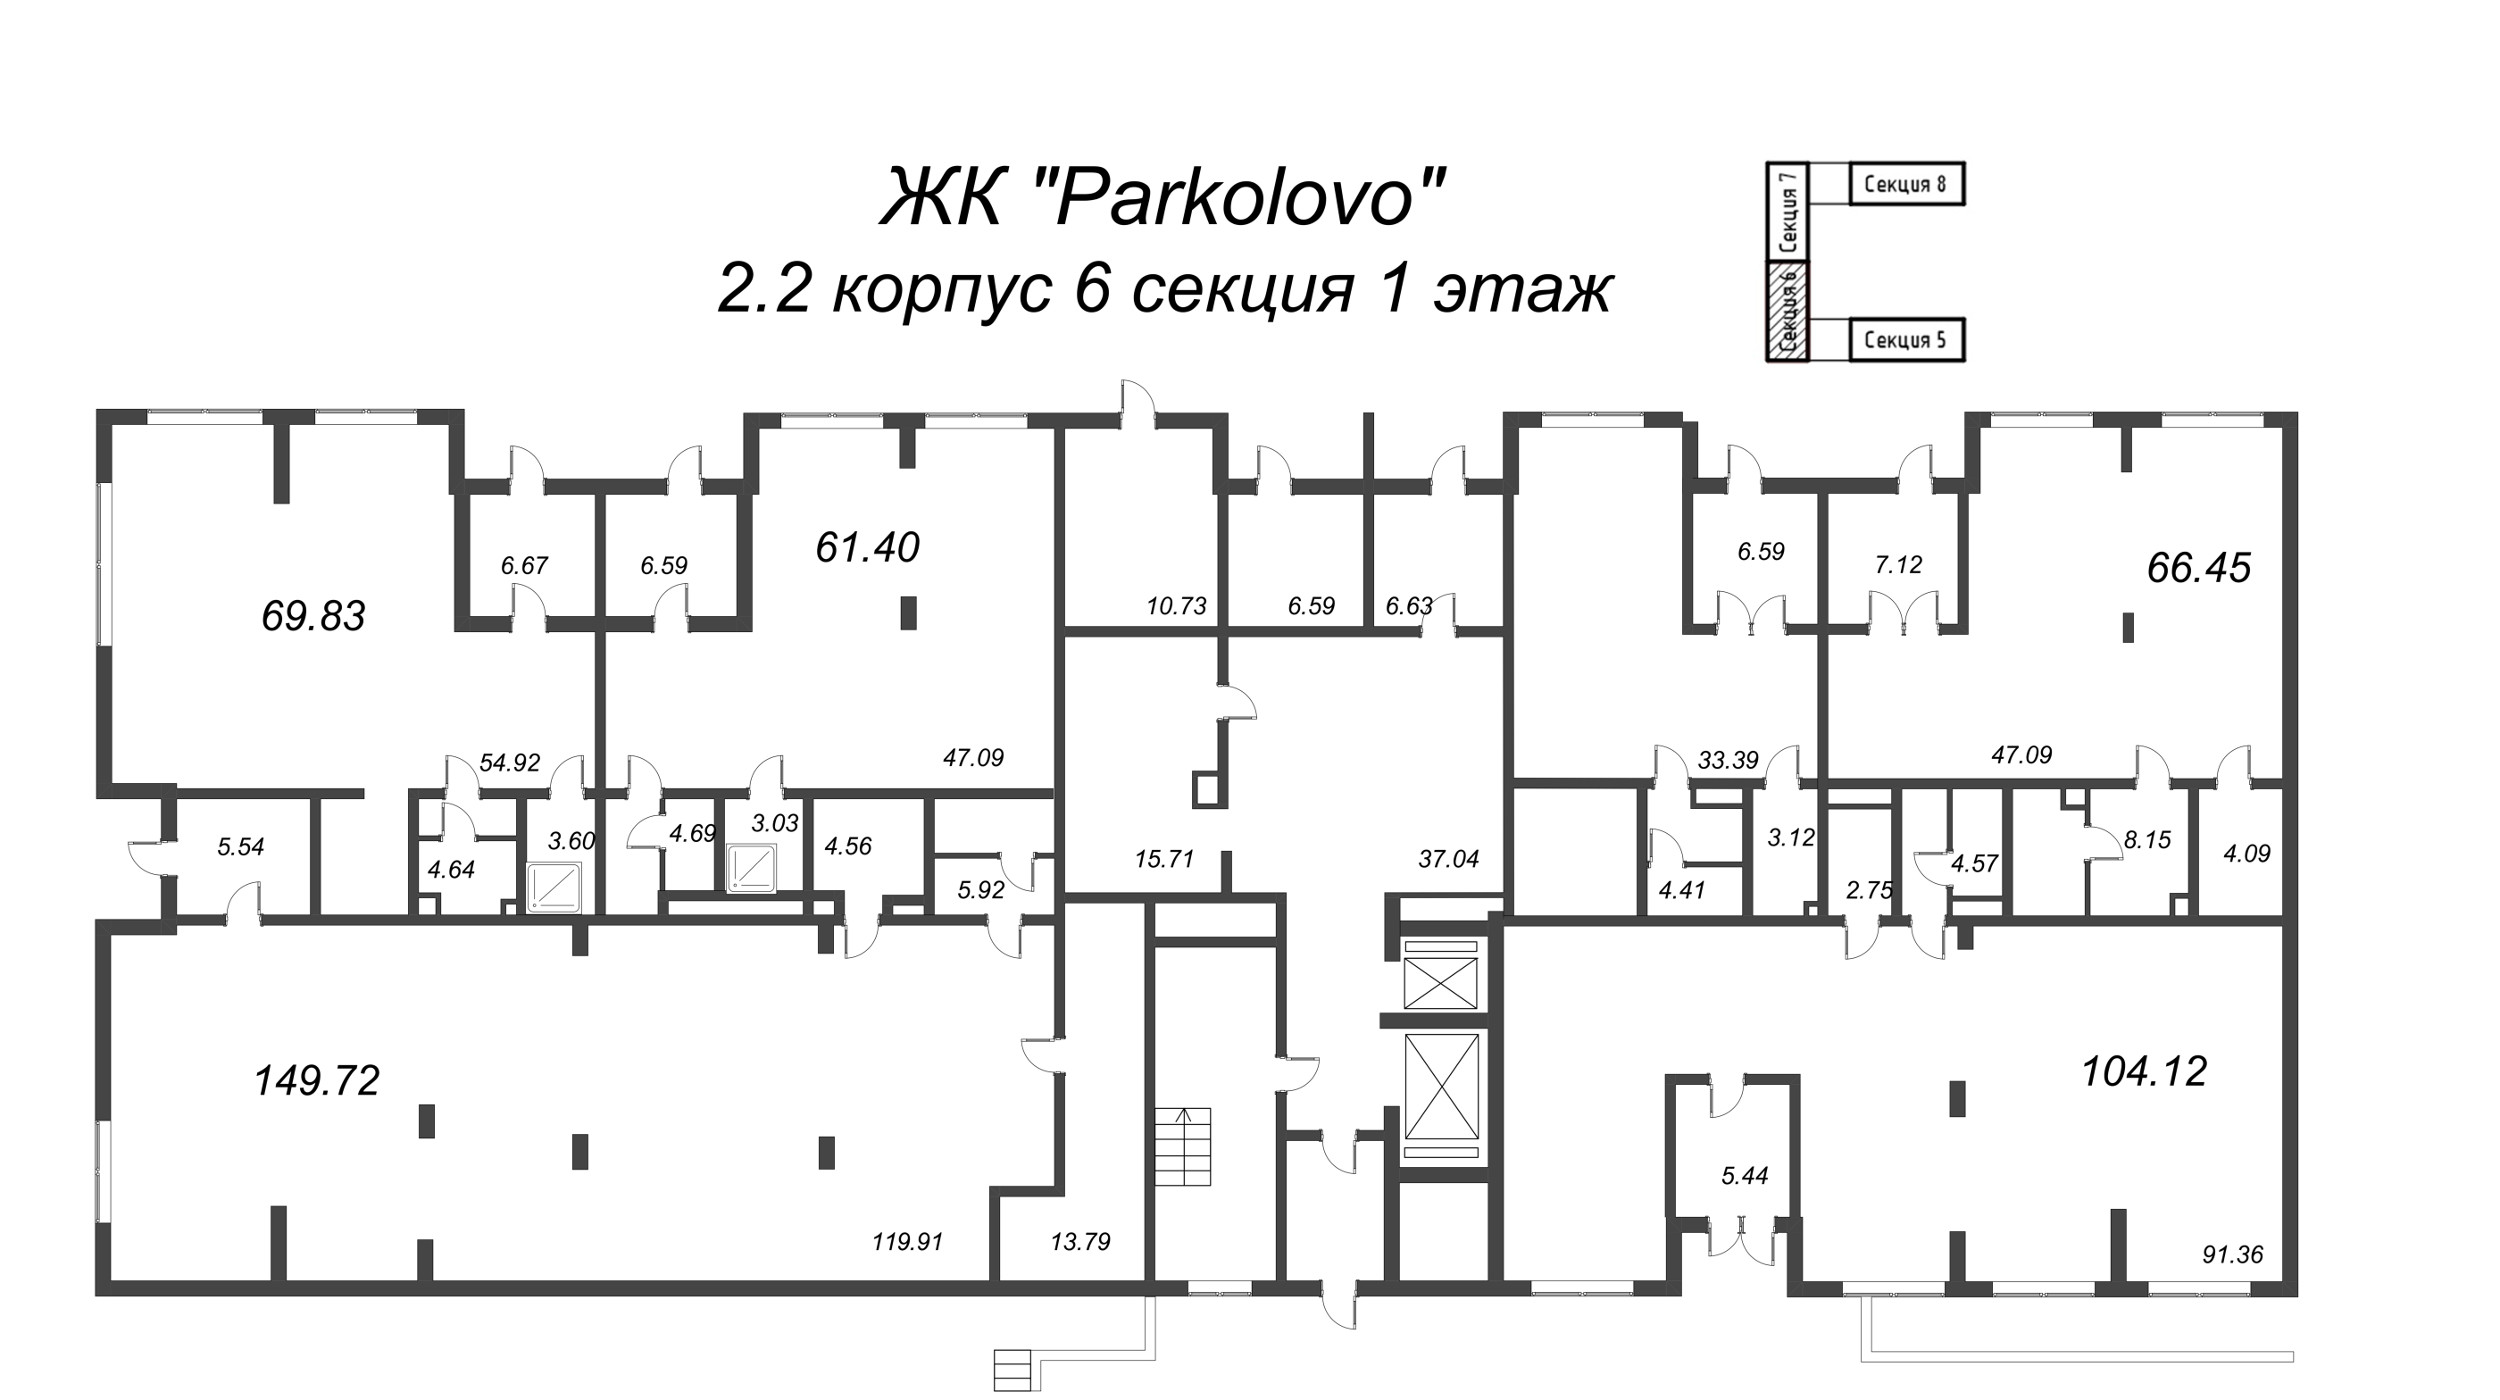 Помещение, 149.72 м² в ЖК "Parkolovo" - планировка этажа